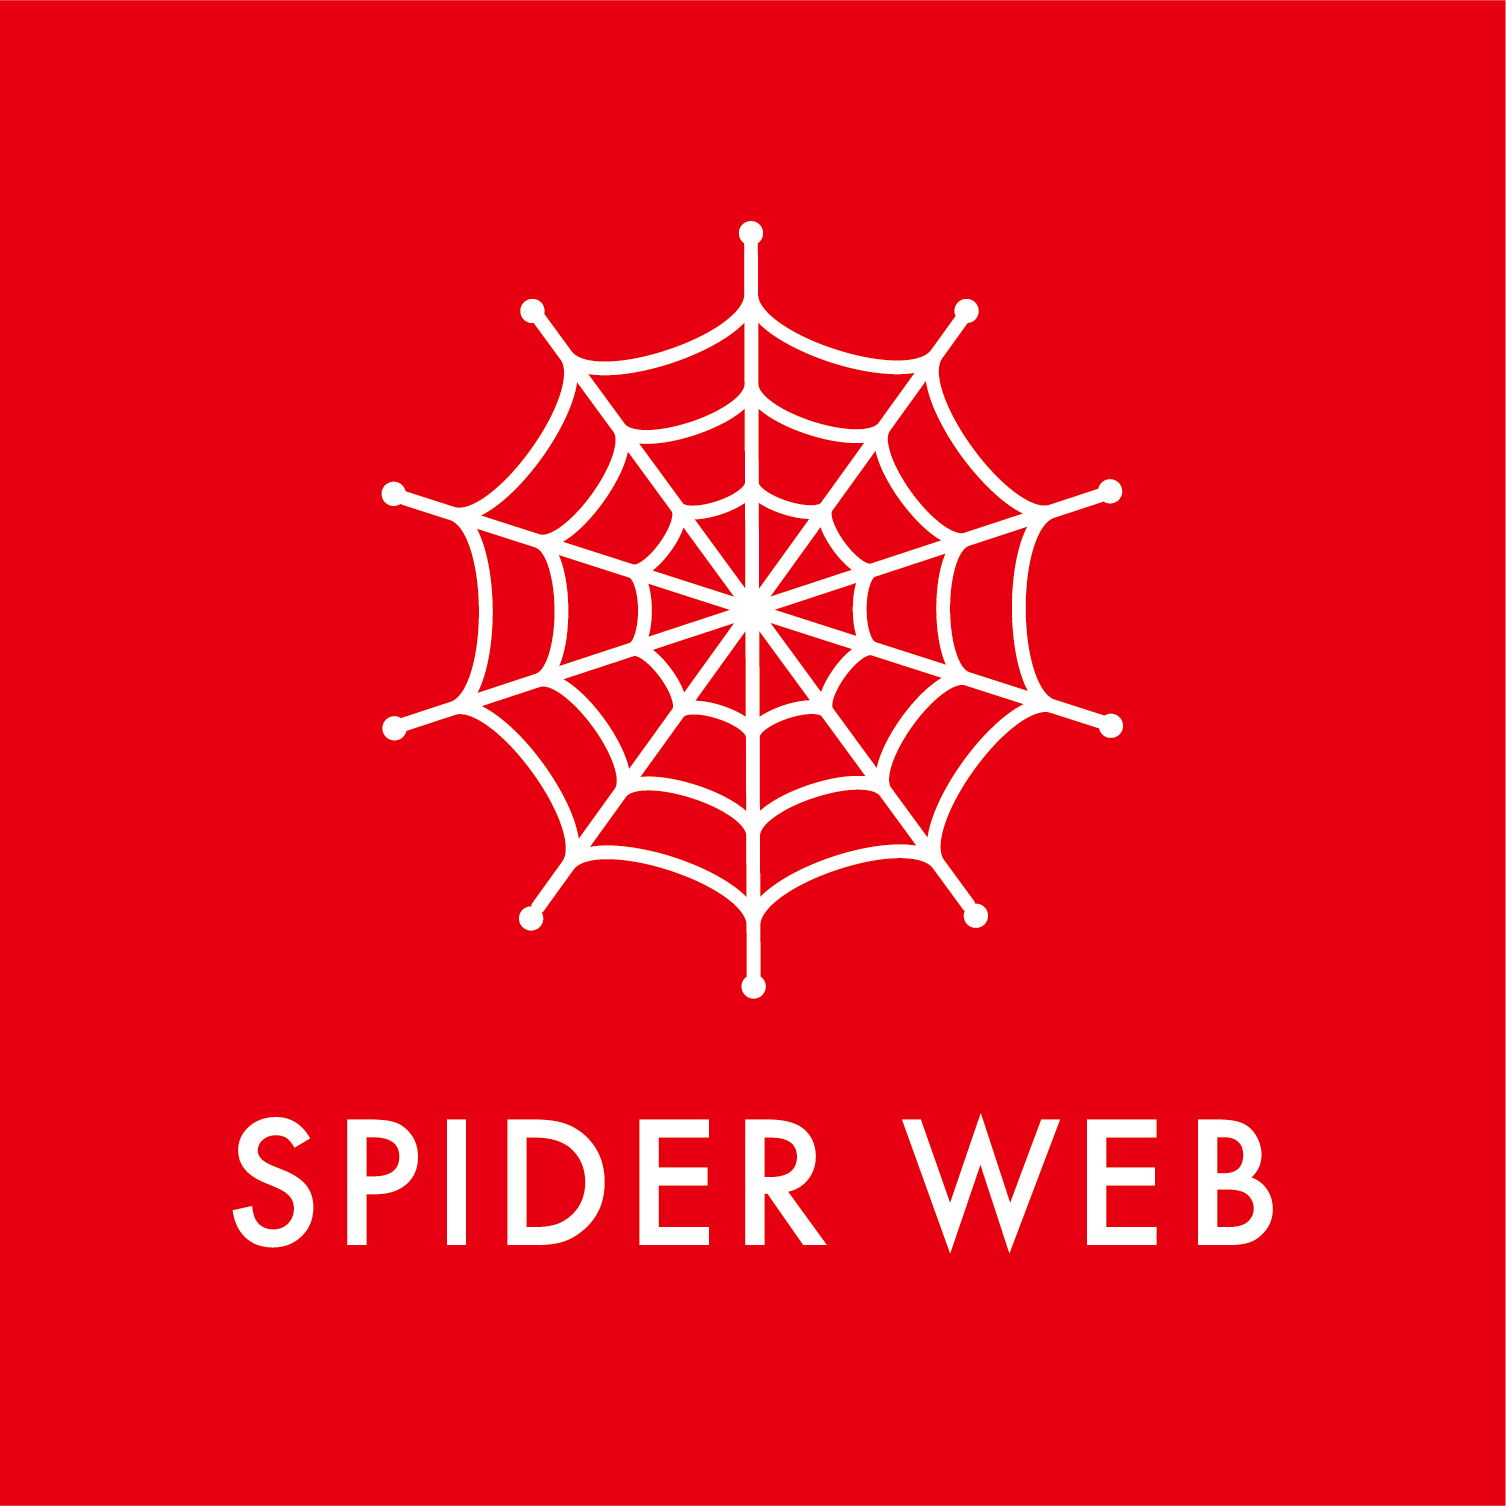 SPIDER WEB logo